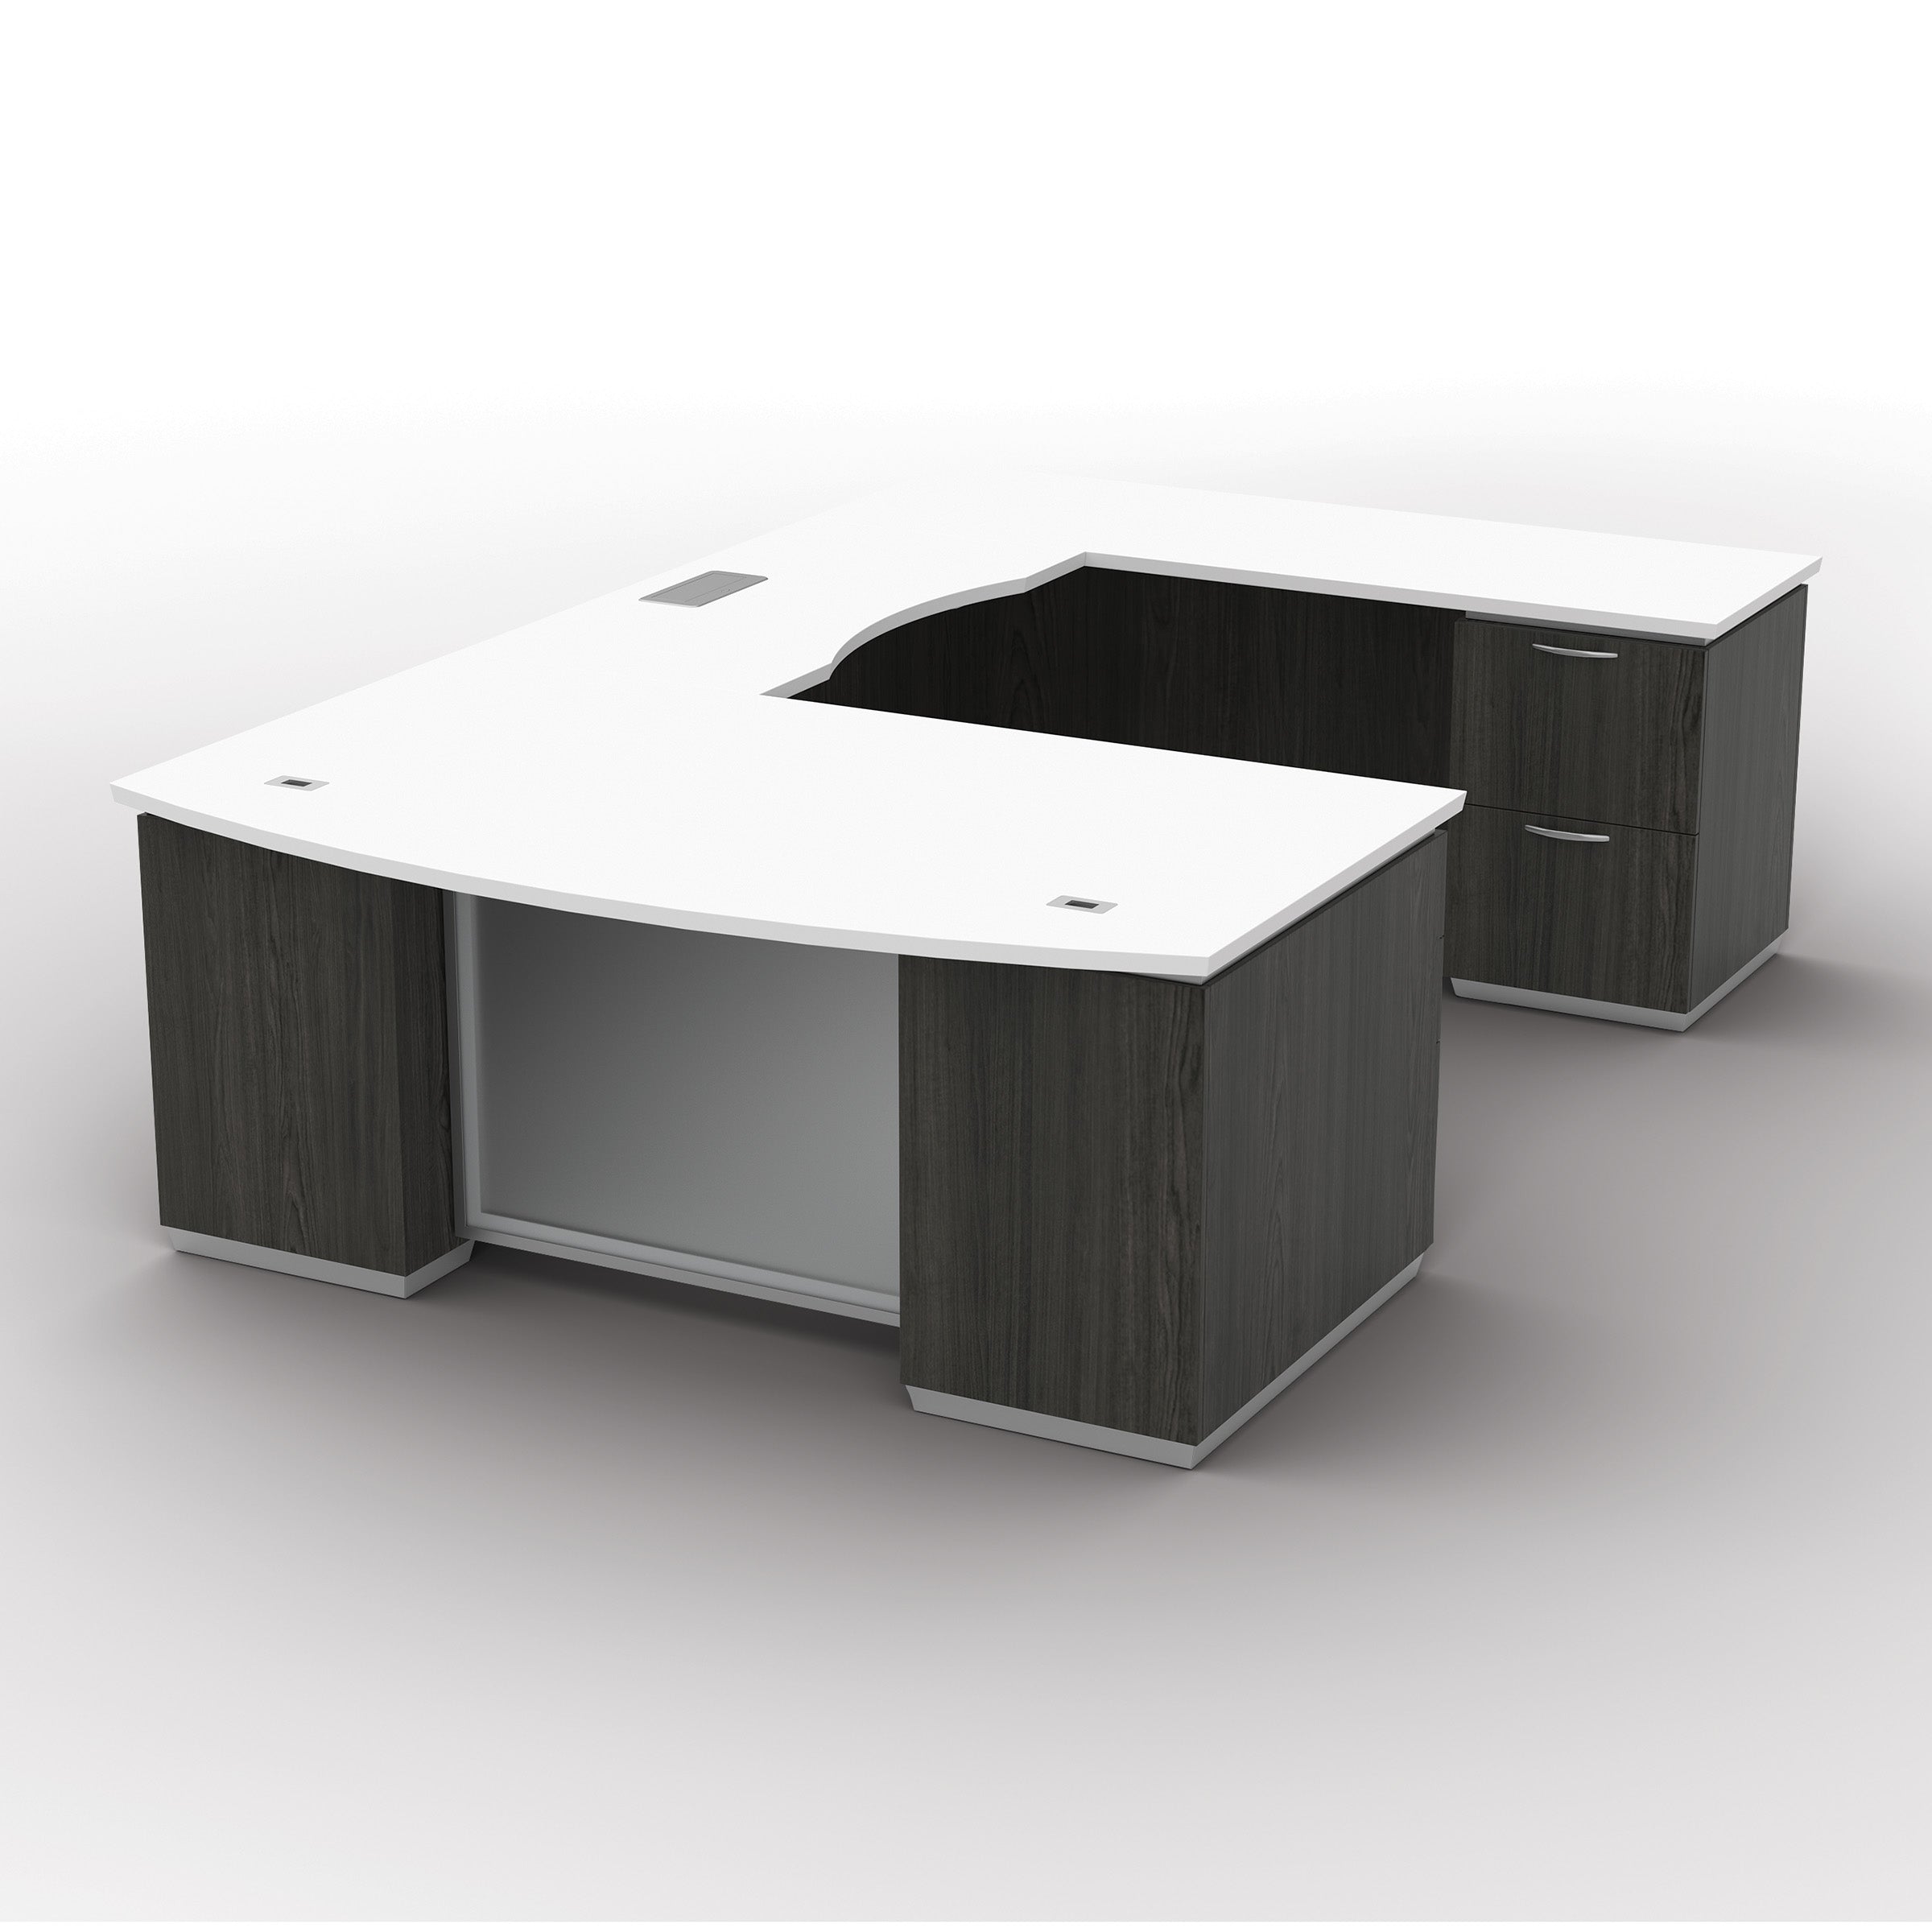 Tuxedo White Bow Front Double Pedestal Desk, 72 x 42, White Top wi -  NextGen Furniture, Inc.